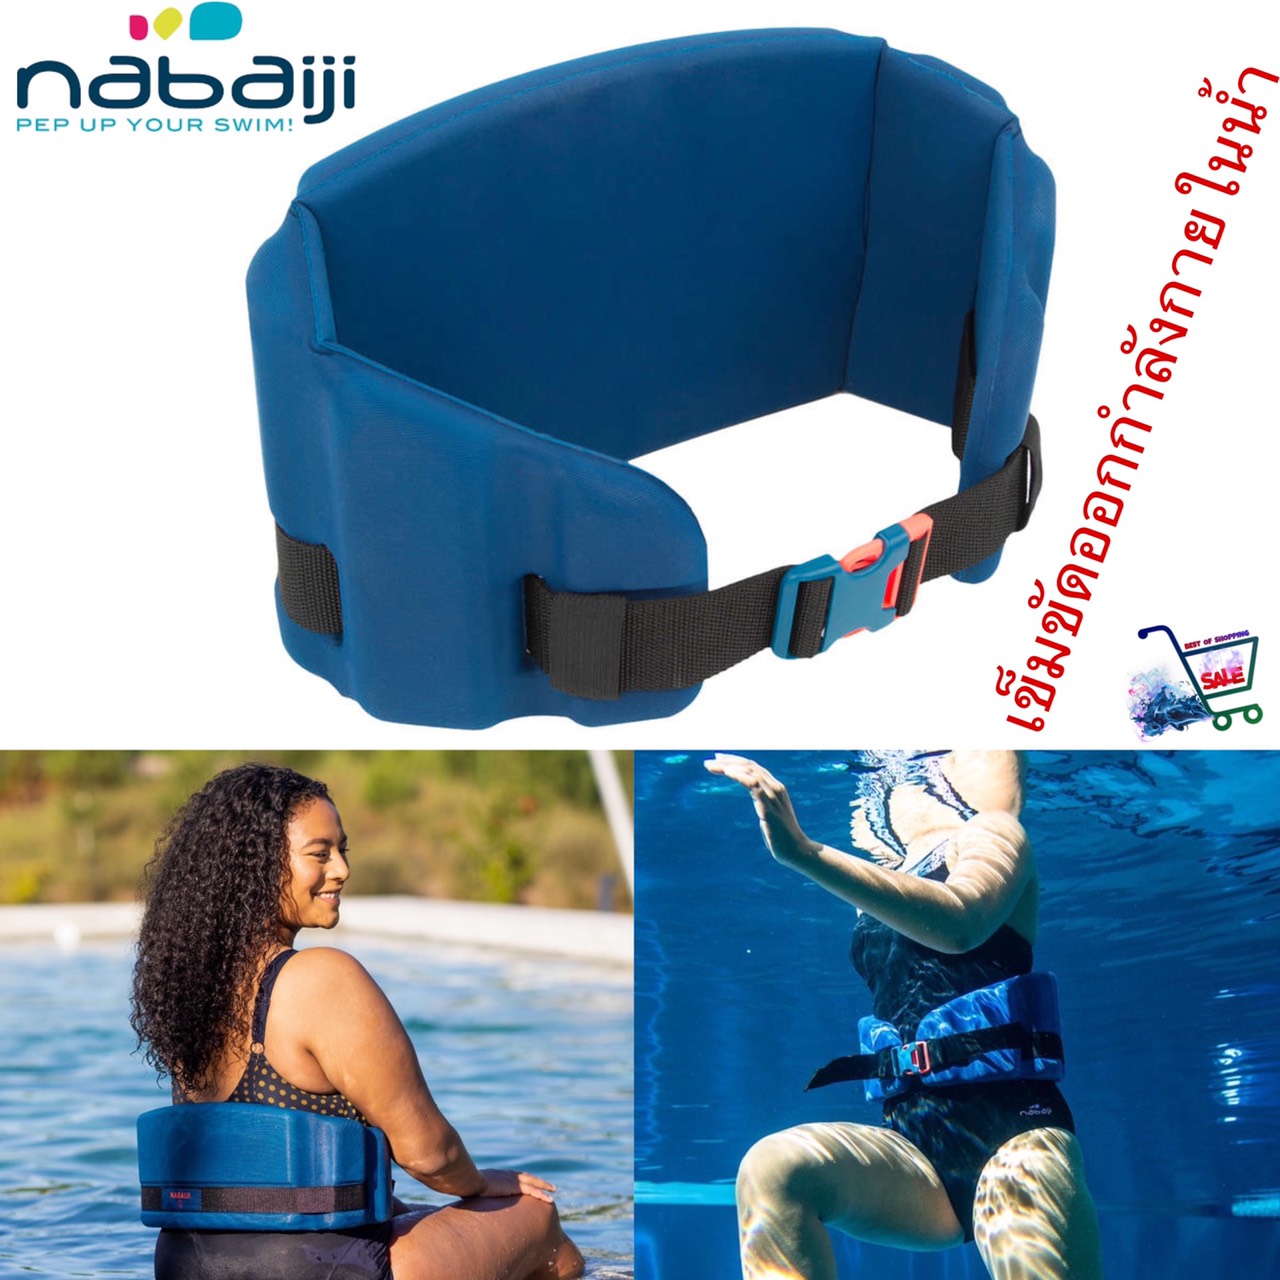 เข็มขัดออกกำลังกายในน้ำ เข็มขัดออกกำลังกาย เข็มขัดช่วยลอยตัว)  Newbelt Aquafitness Buoyancy Belt - Blue